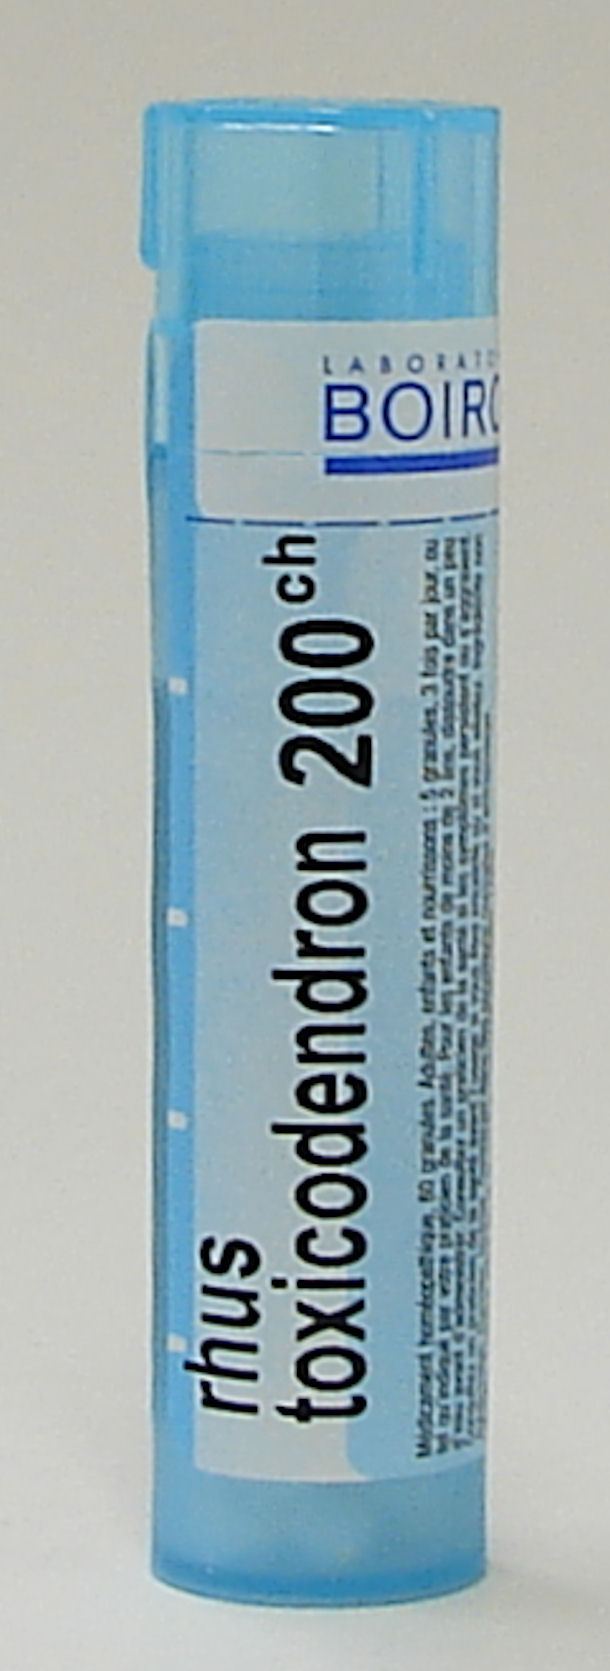 Rhus Toxicodendron, 200ch (Boiron)